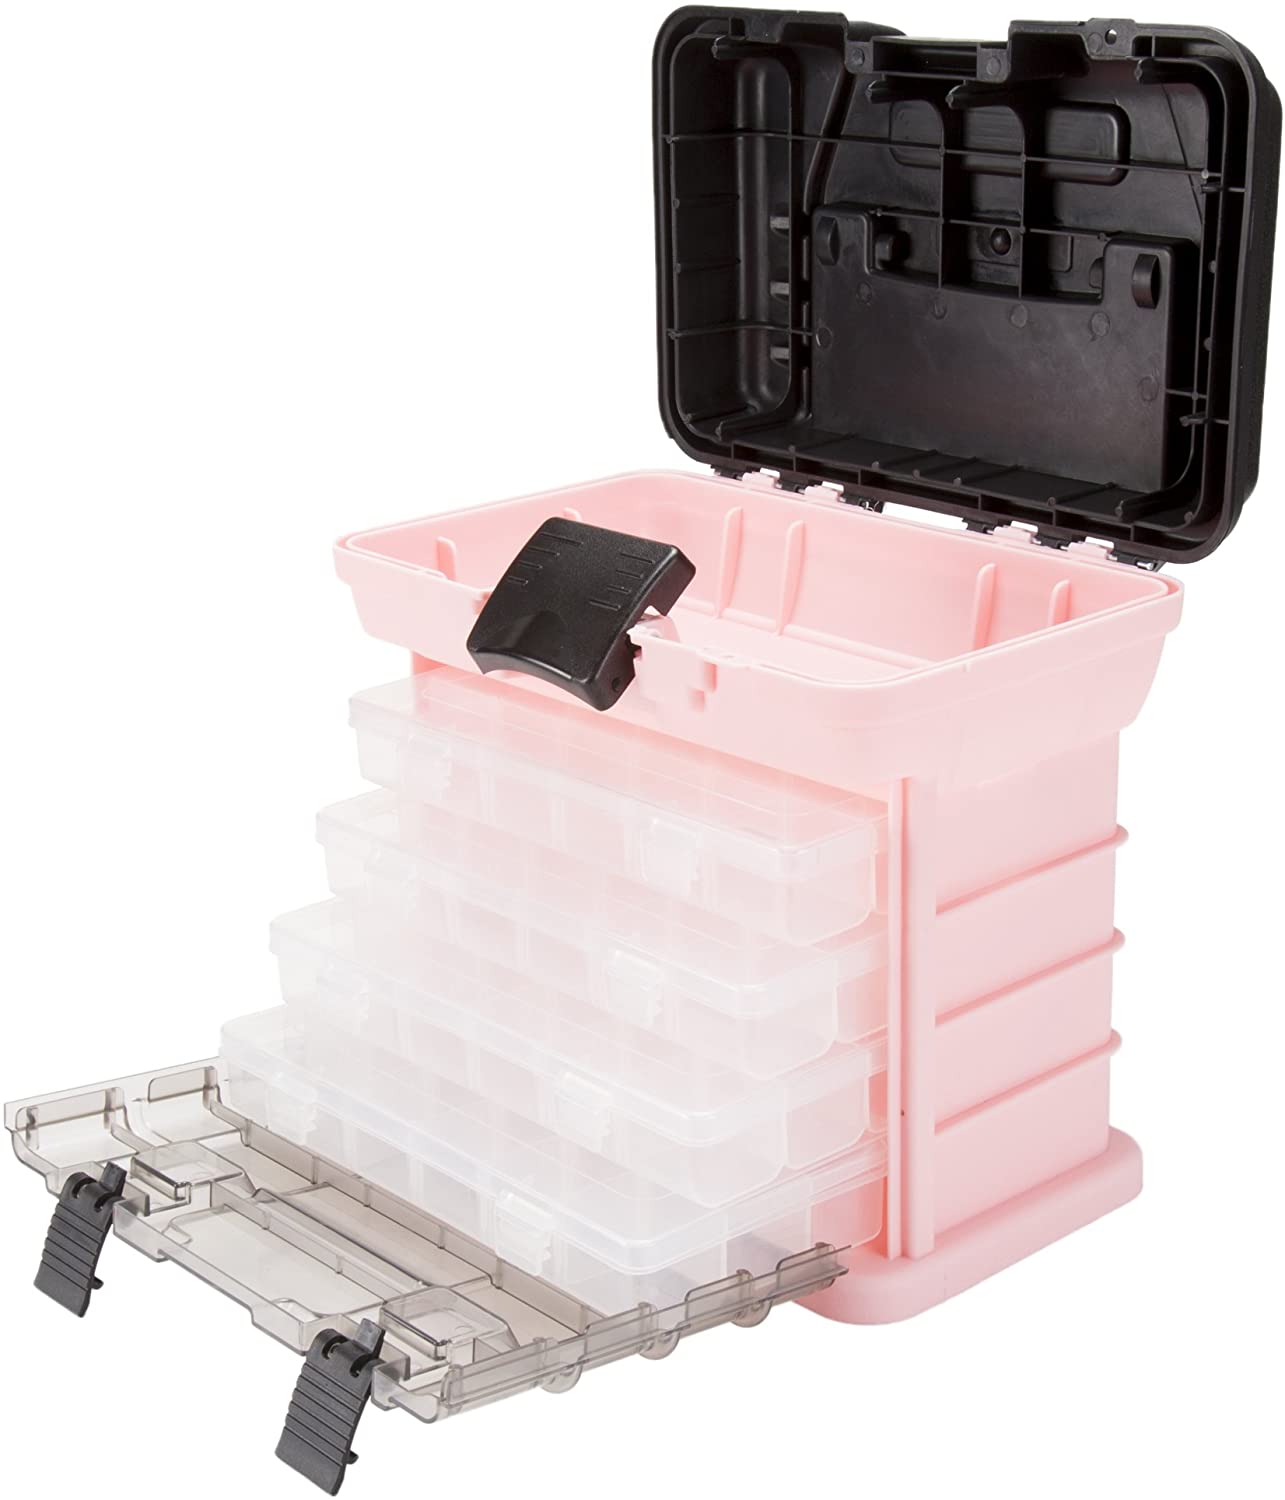 Stalwart Portable Multi-Purpose Tool Box